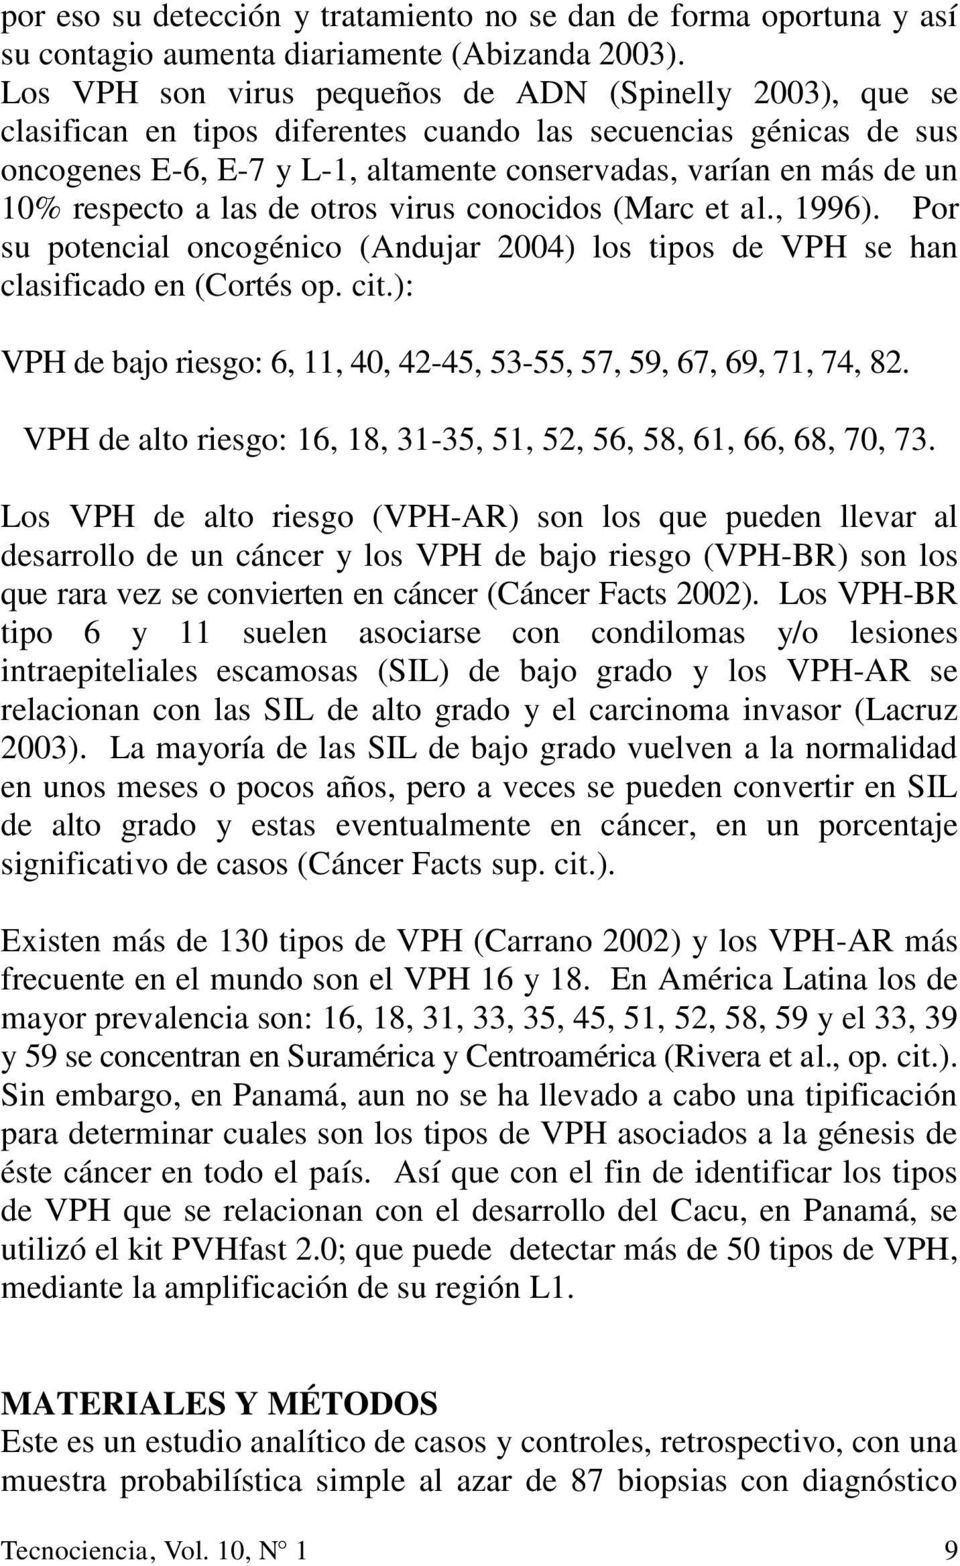 respecto a las de otros virus conocidos (Marc et al., 1996). Por su potencial oncogénico (Andujar 2004) los tipos de VPH se han clasificado en (Cortés op. cit.